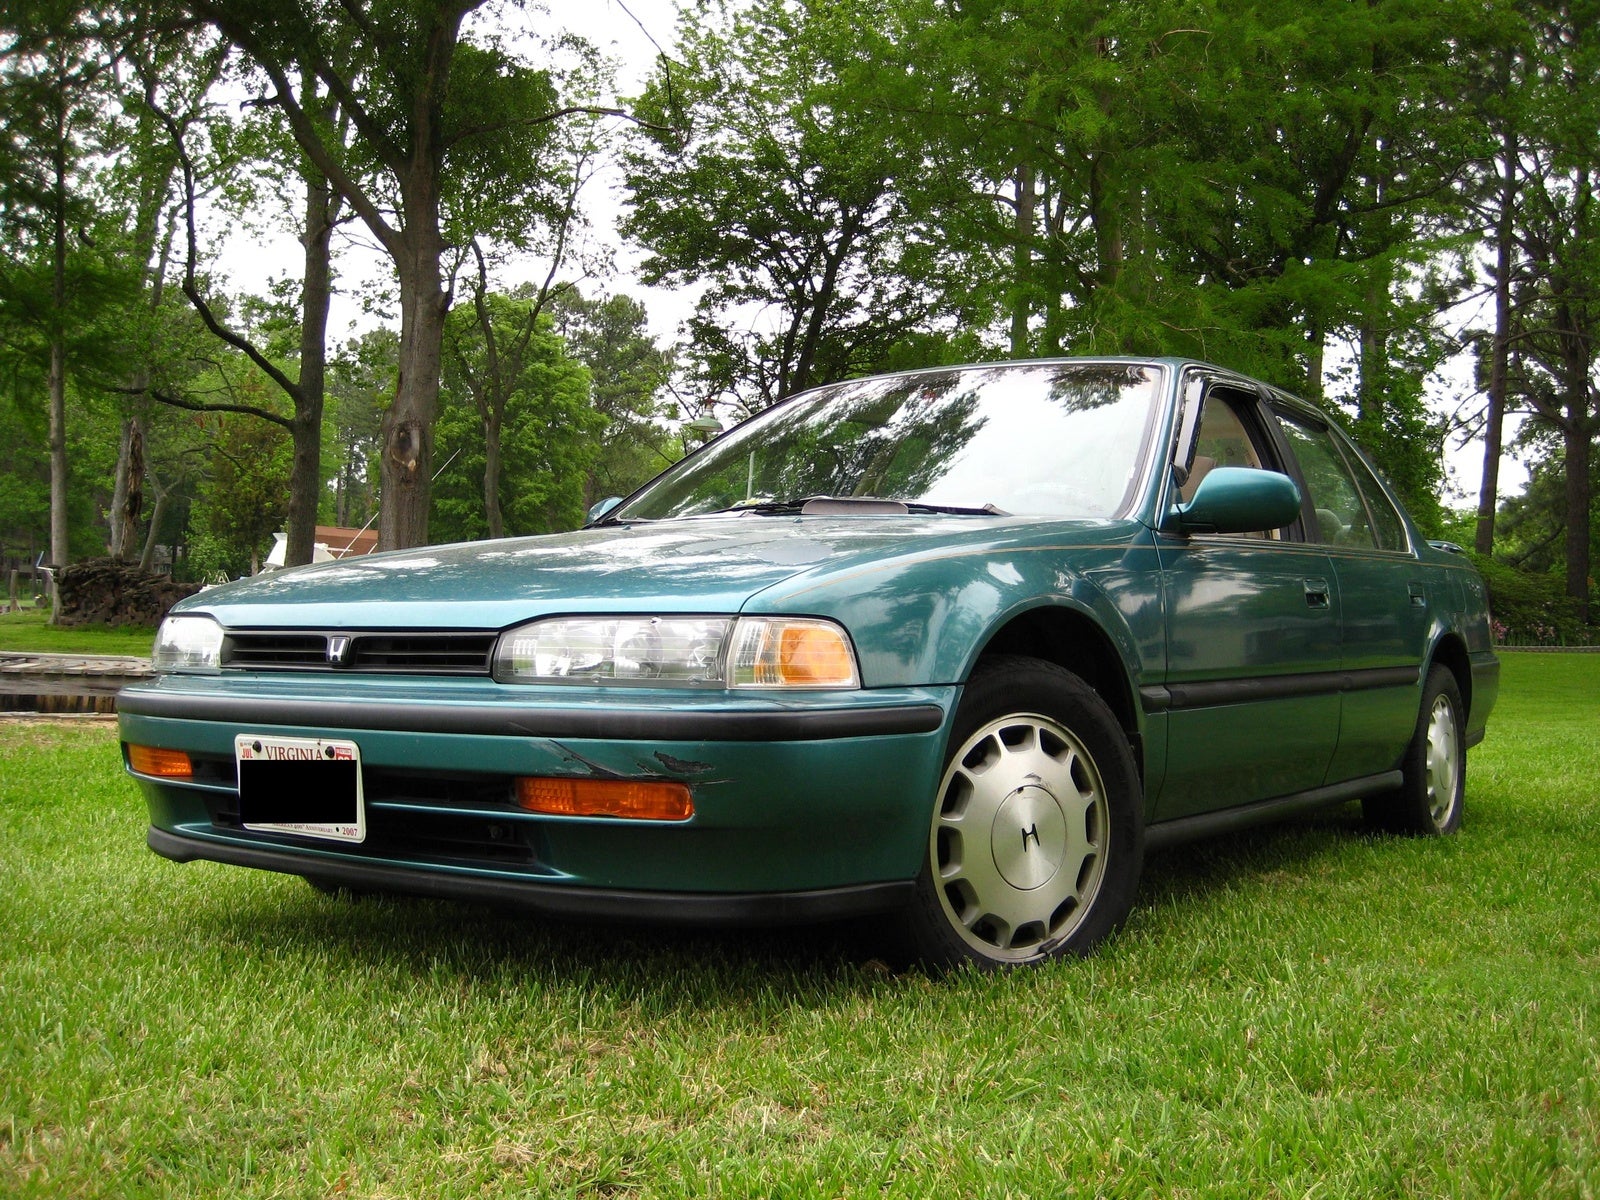 1992 Honda Accord - Pictures - CarGurus